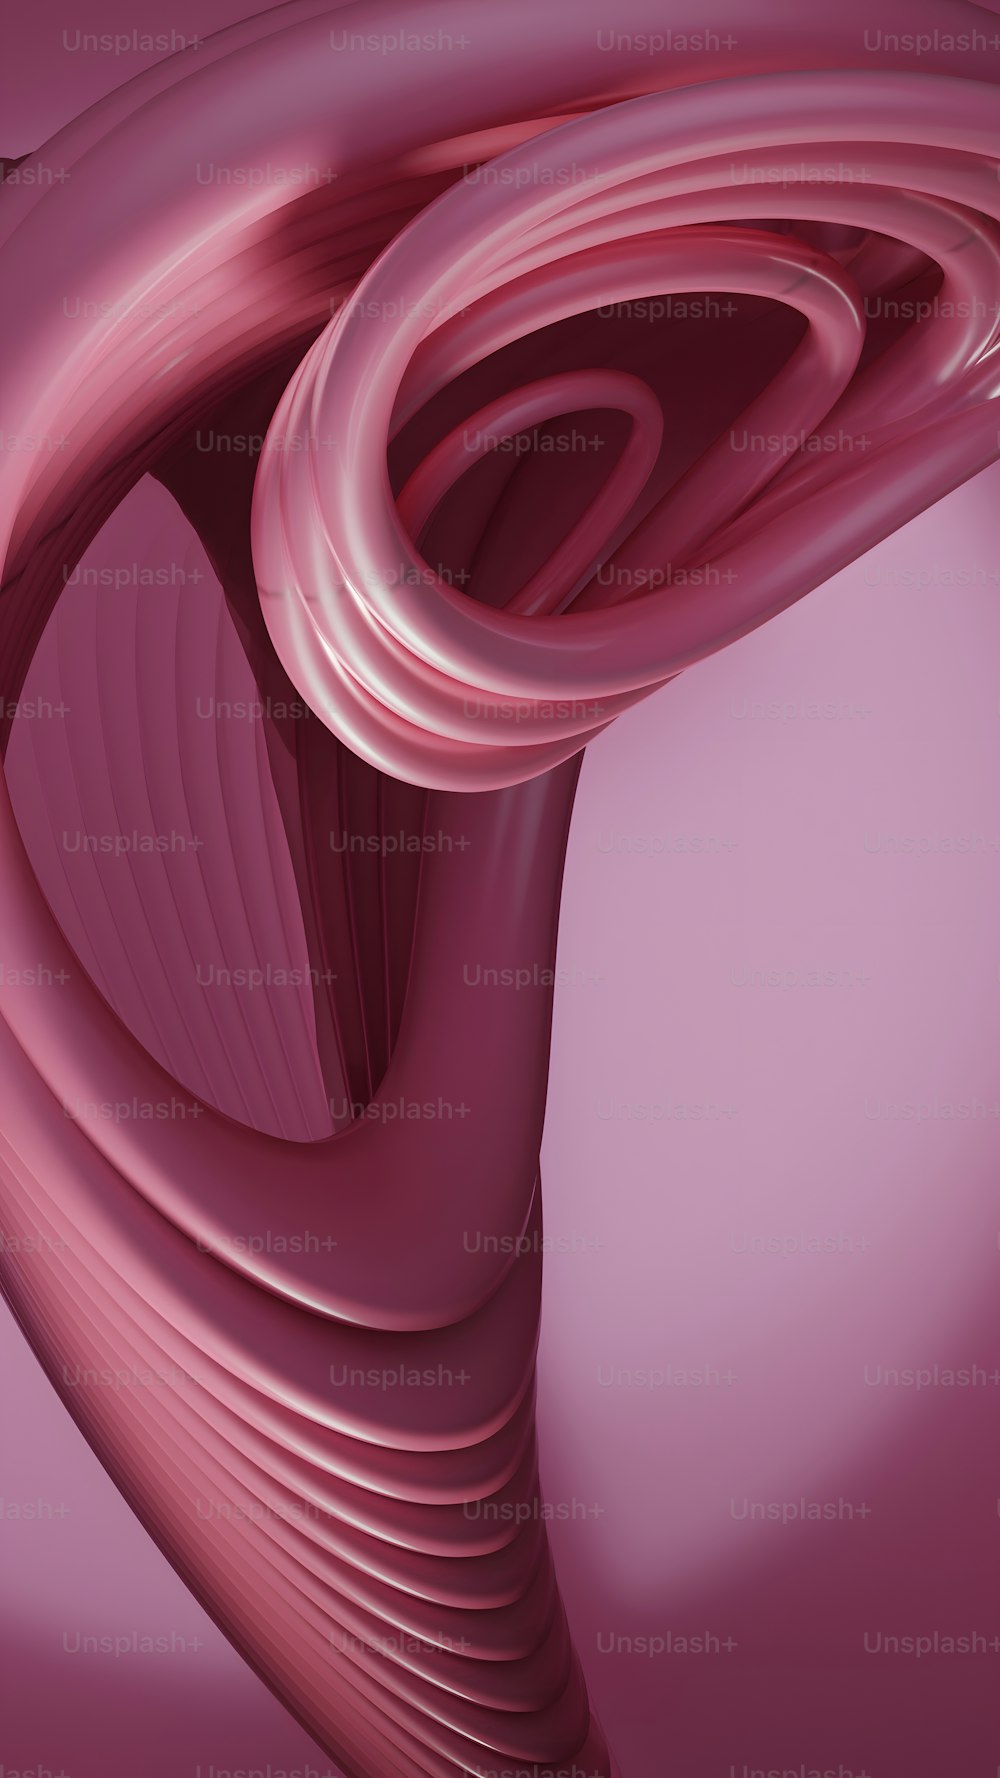 um fundo rosa com um objeto curvo no meio